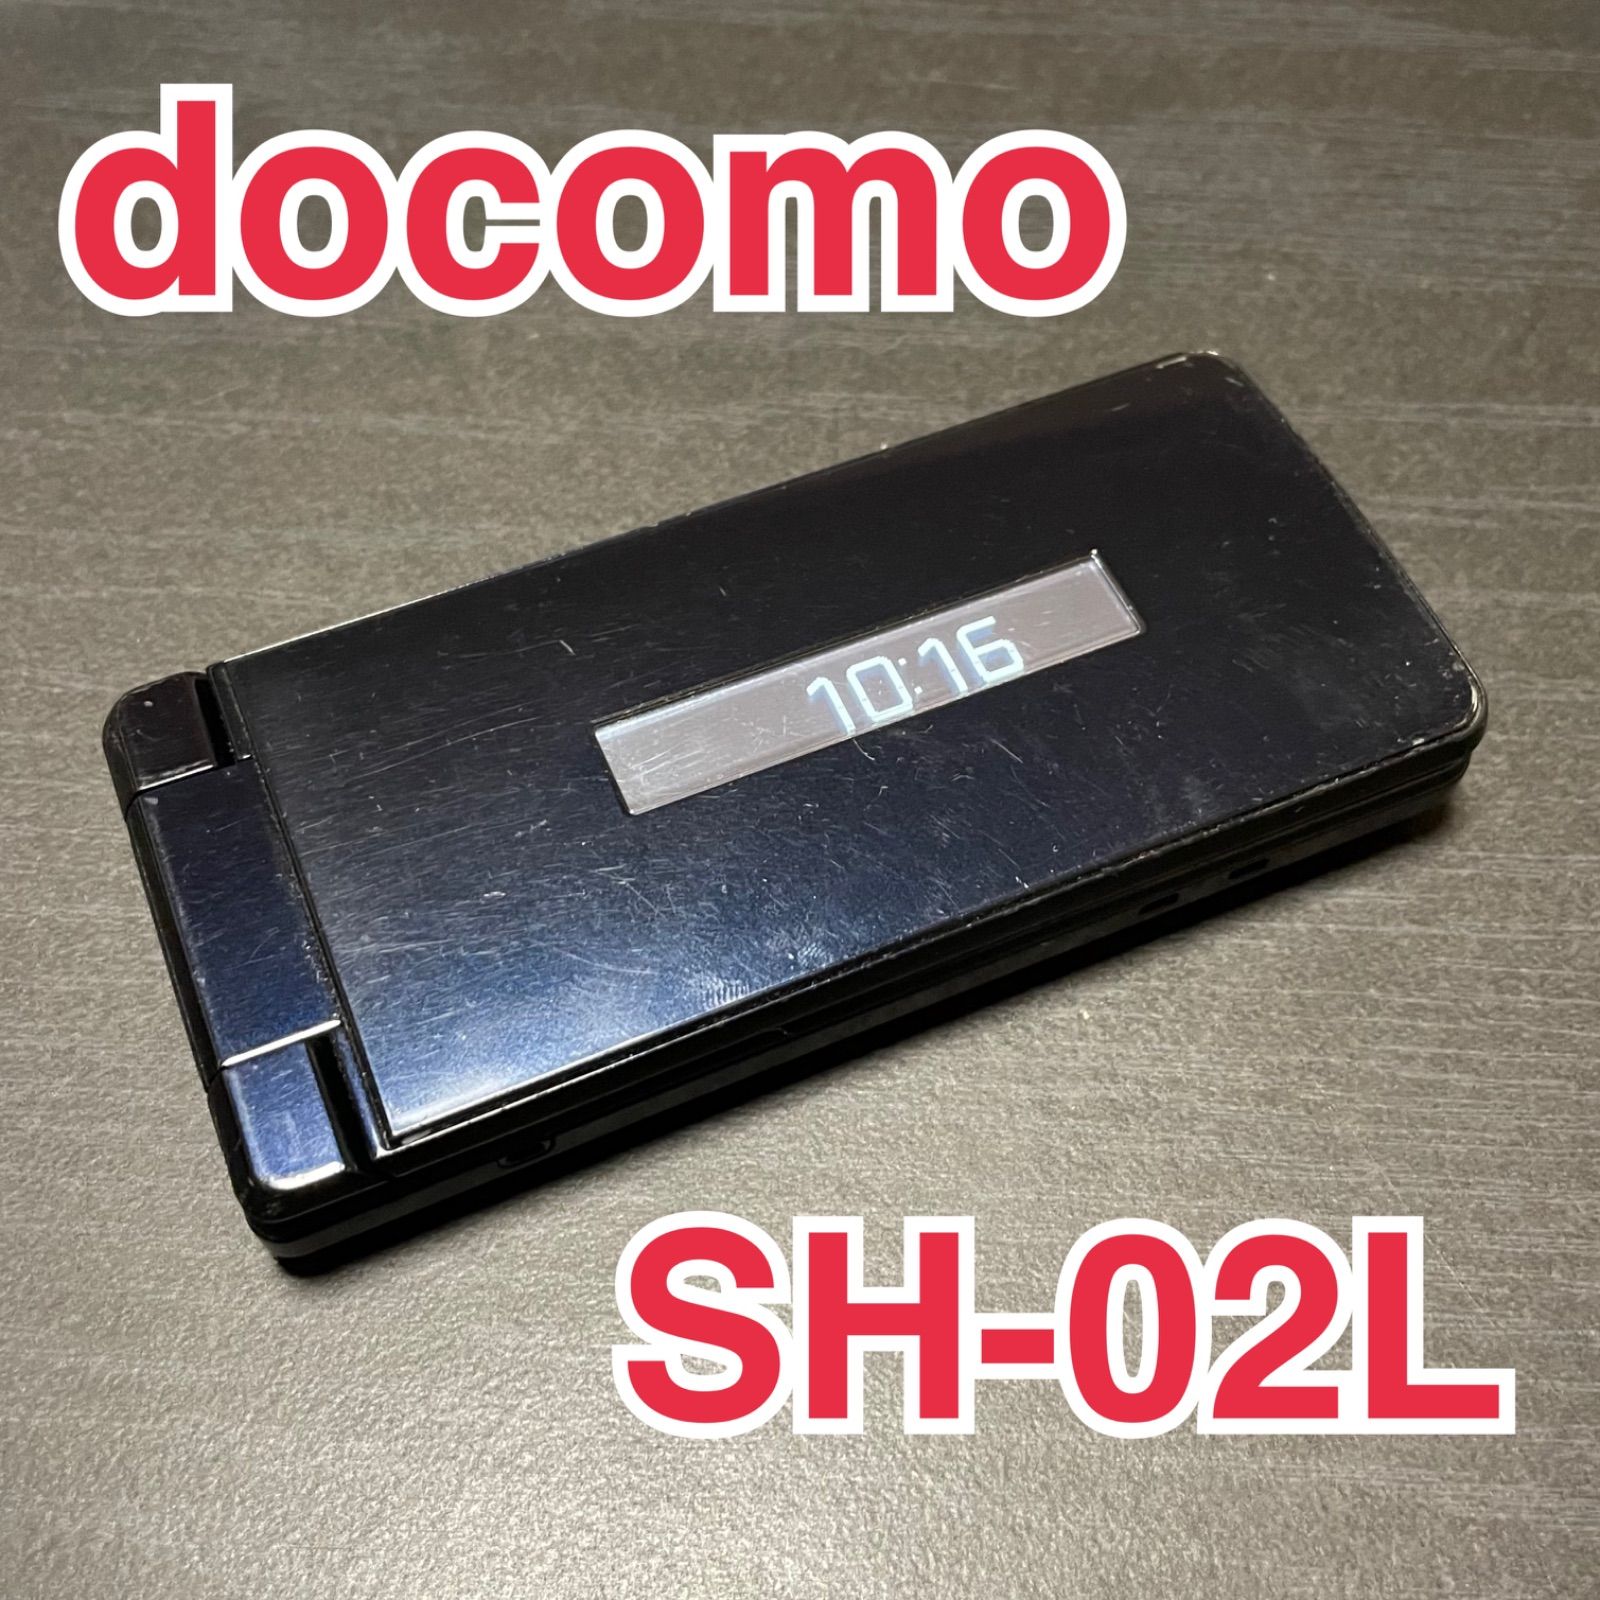 シャープ SH-02L 携帯電話 ガラケー ブラック ドコモ MP0022 | agb.md